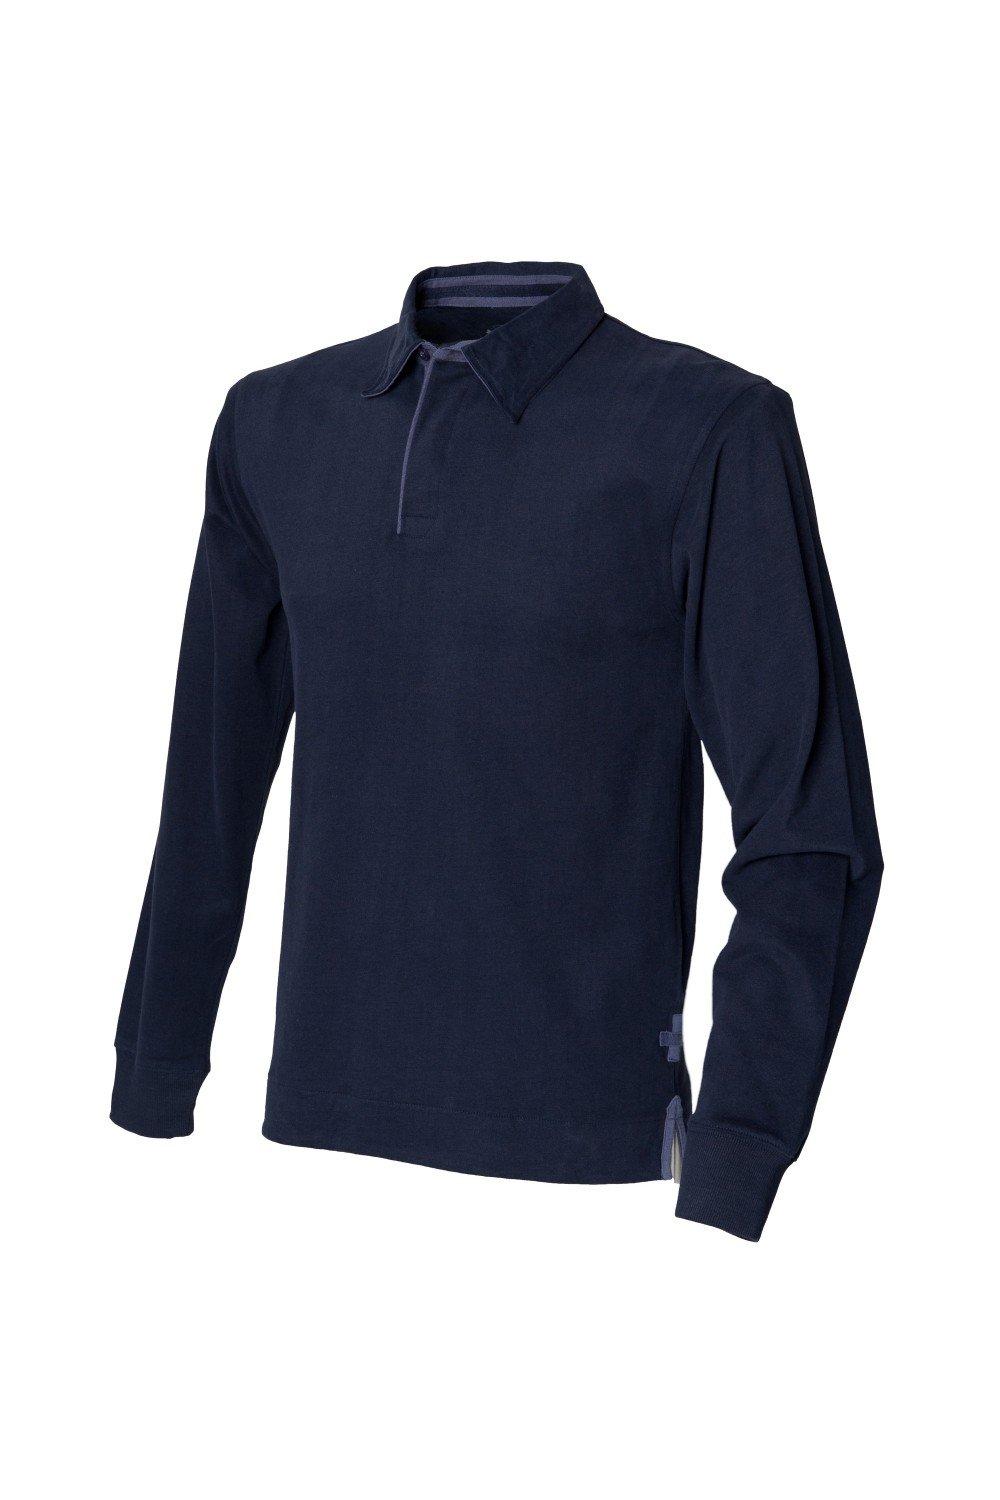 Супермягкая рубашка-поло для регби с длинными рукавами Front Row, темно-синий front row shop pубашка